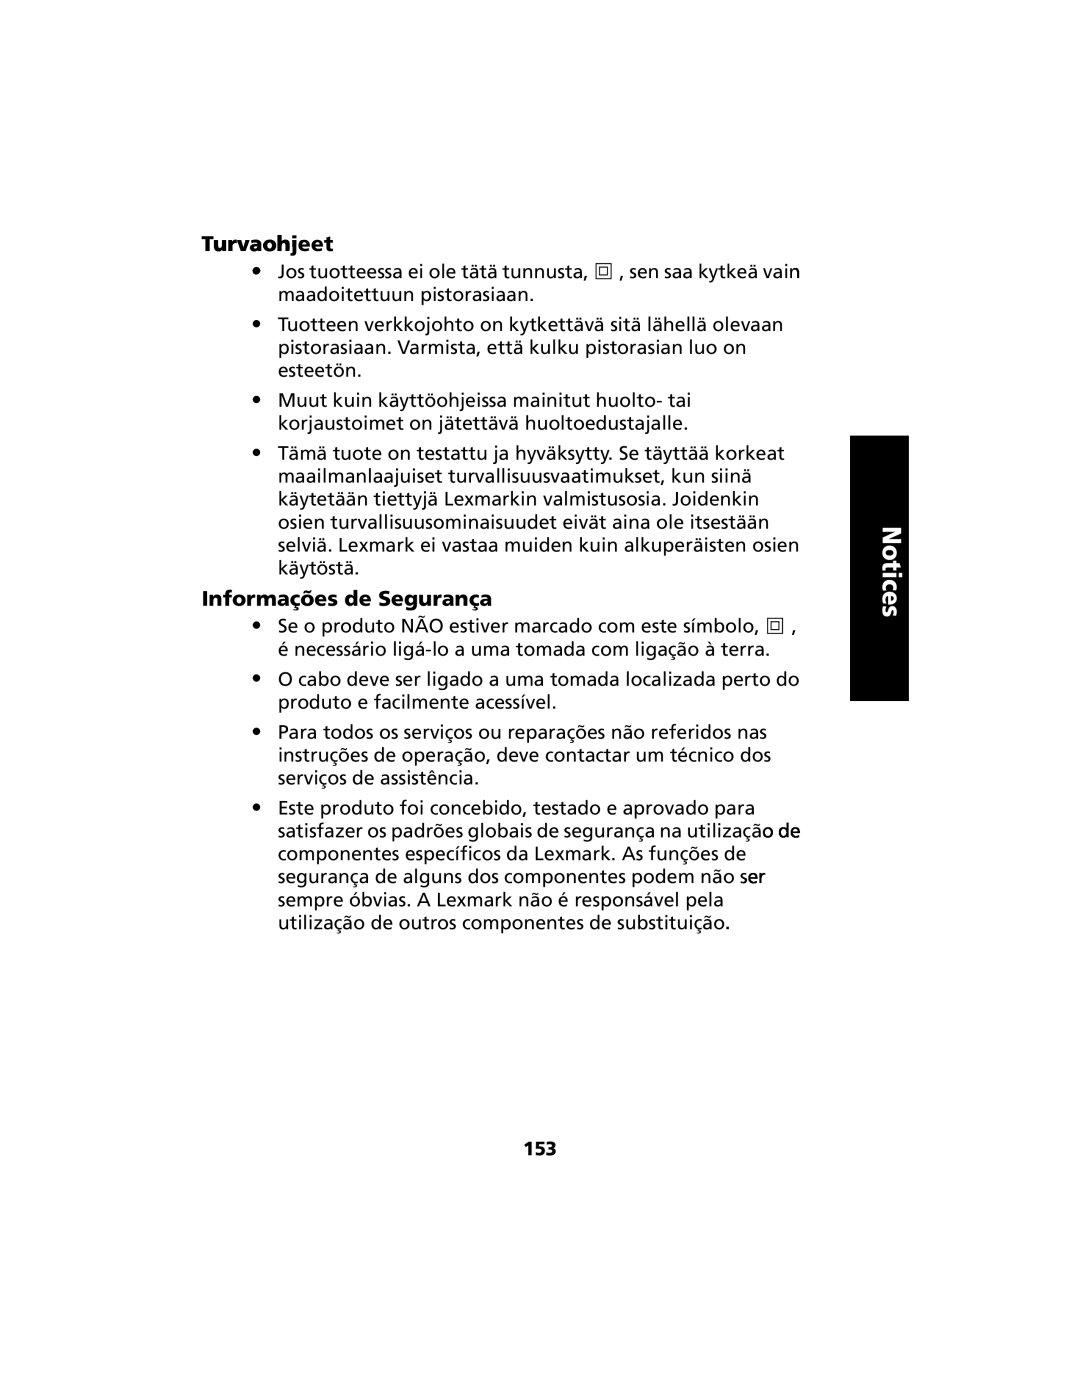 Lexmark 2480 manual Turvaohjeet, Informações de Segurança, Notices 